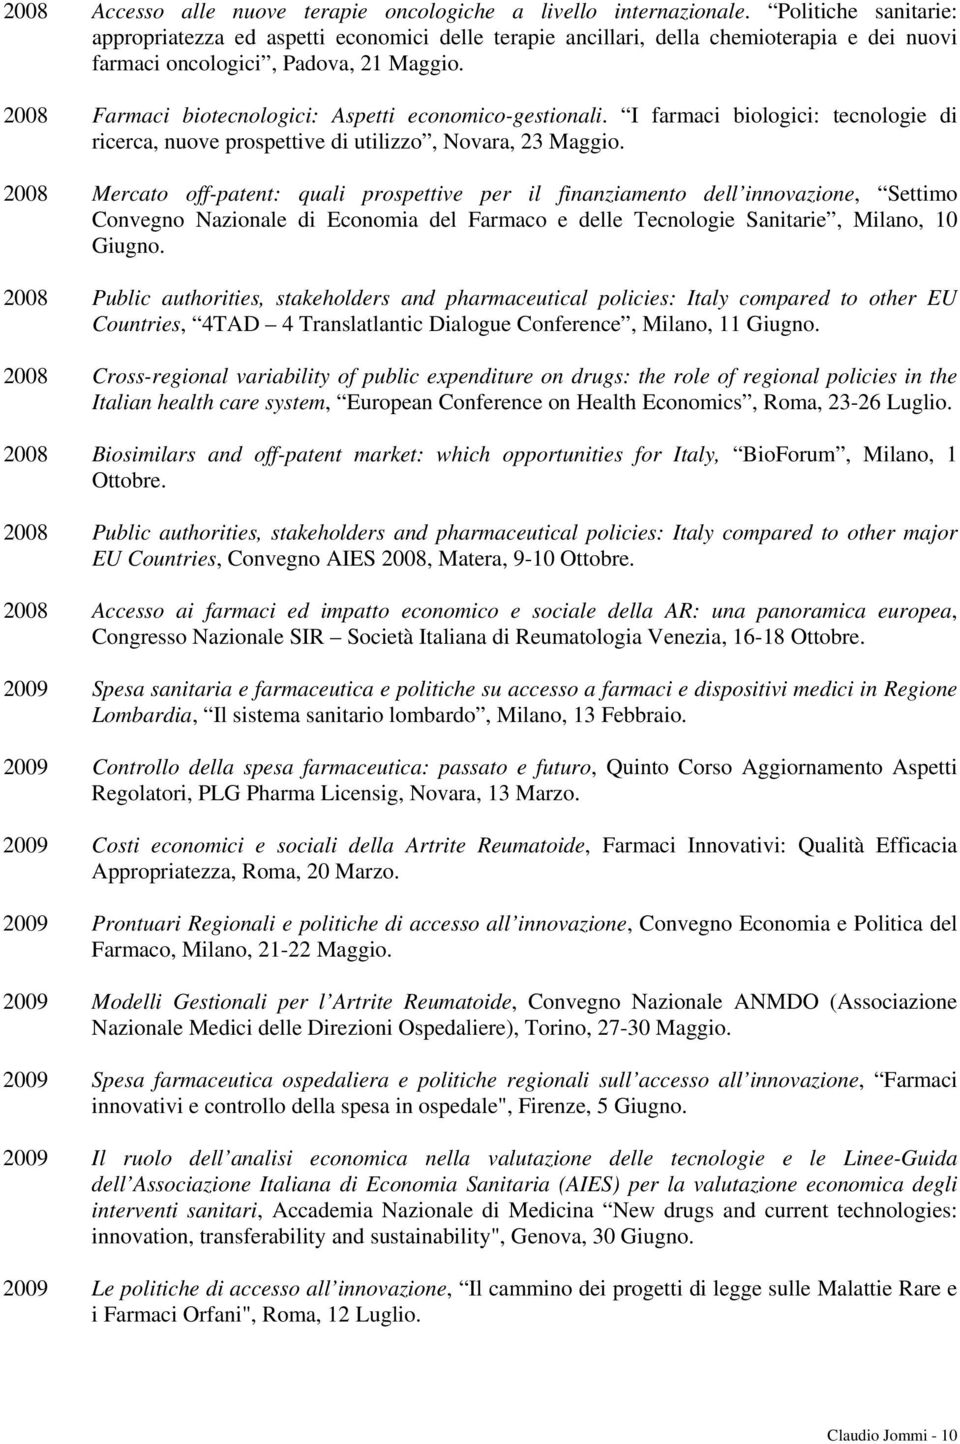 2008 Farmaci biotecnologici: Aspetti economico-gestionali. I farmaci biologici: tecnologie di ricerca, nuove prospettive di utilizzo, Novara, 23 Maggio.